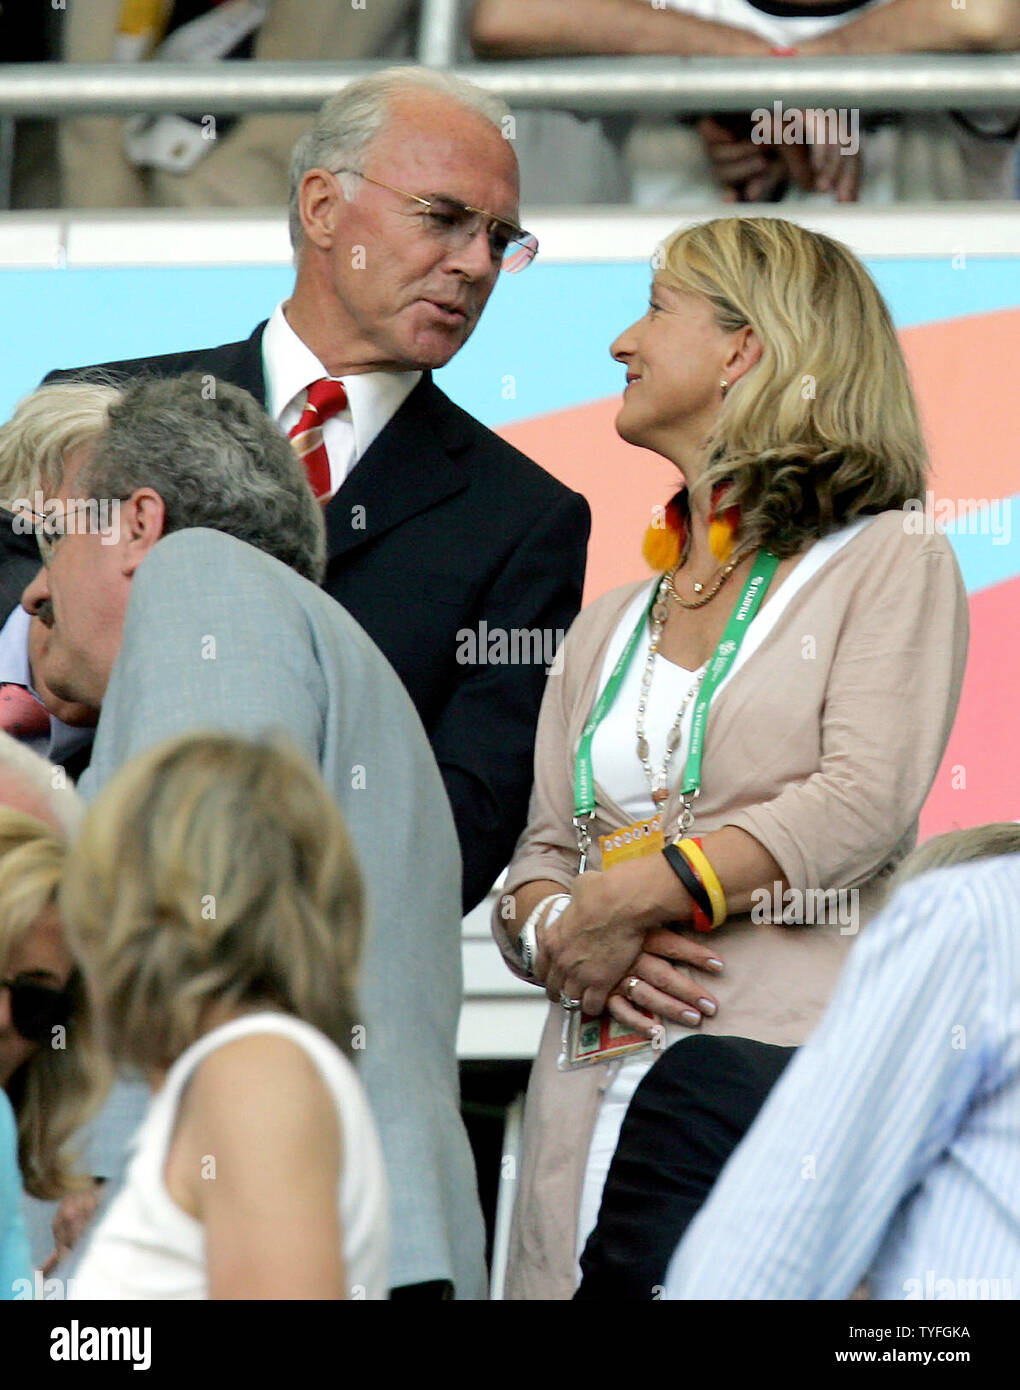 Franz Beckenbauer avec sa femme Heidi, anciennement nommée Heidi Burmeister à la Coupe du Monde de football, le 24 juin 2006. Beckenbauer a mariée hier à Oberndorf, Allemagne. L'Allemagne a battu la Suède 2-0. (Photo d'UPI/Norbert Rzepka) Banque D'Images